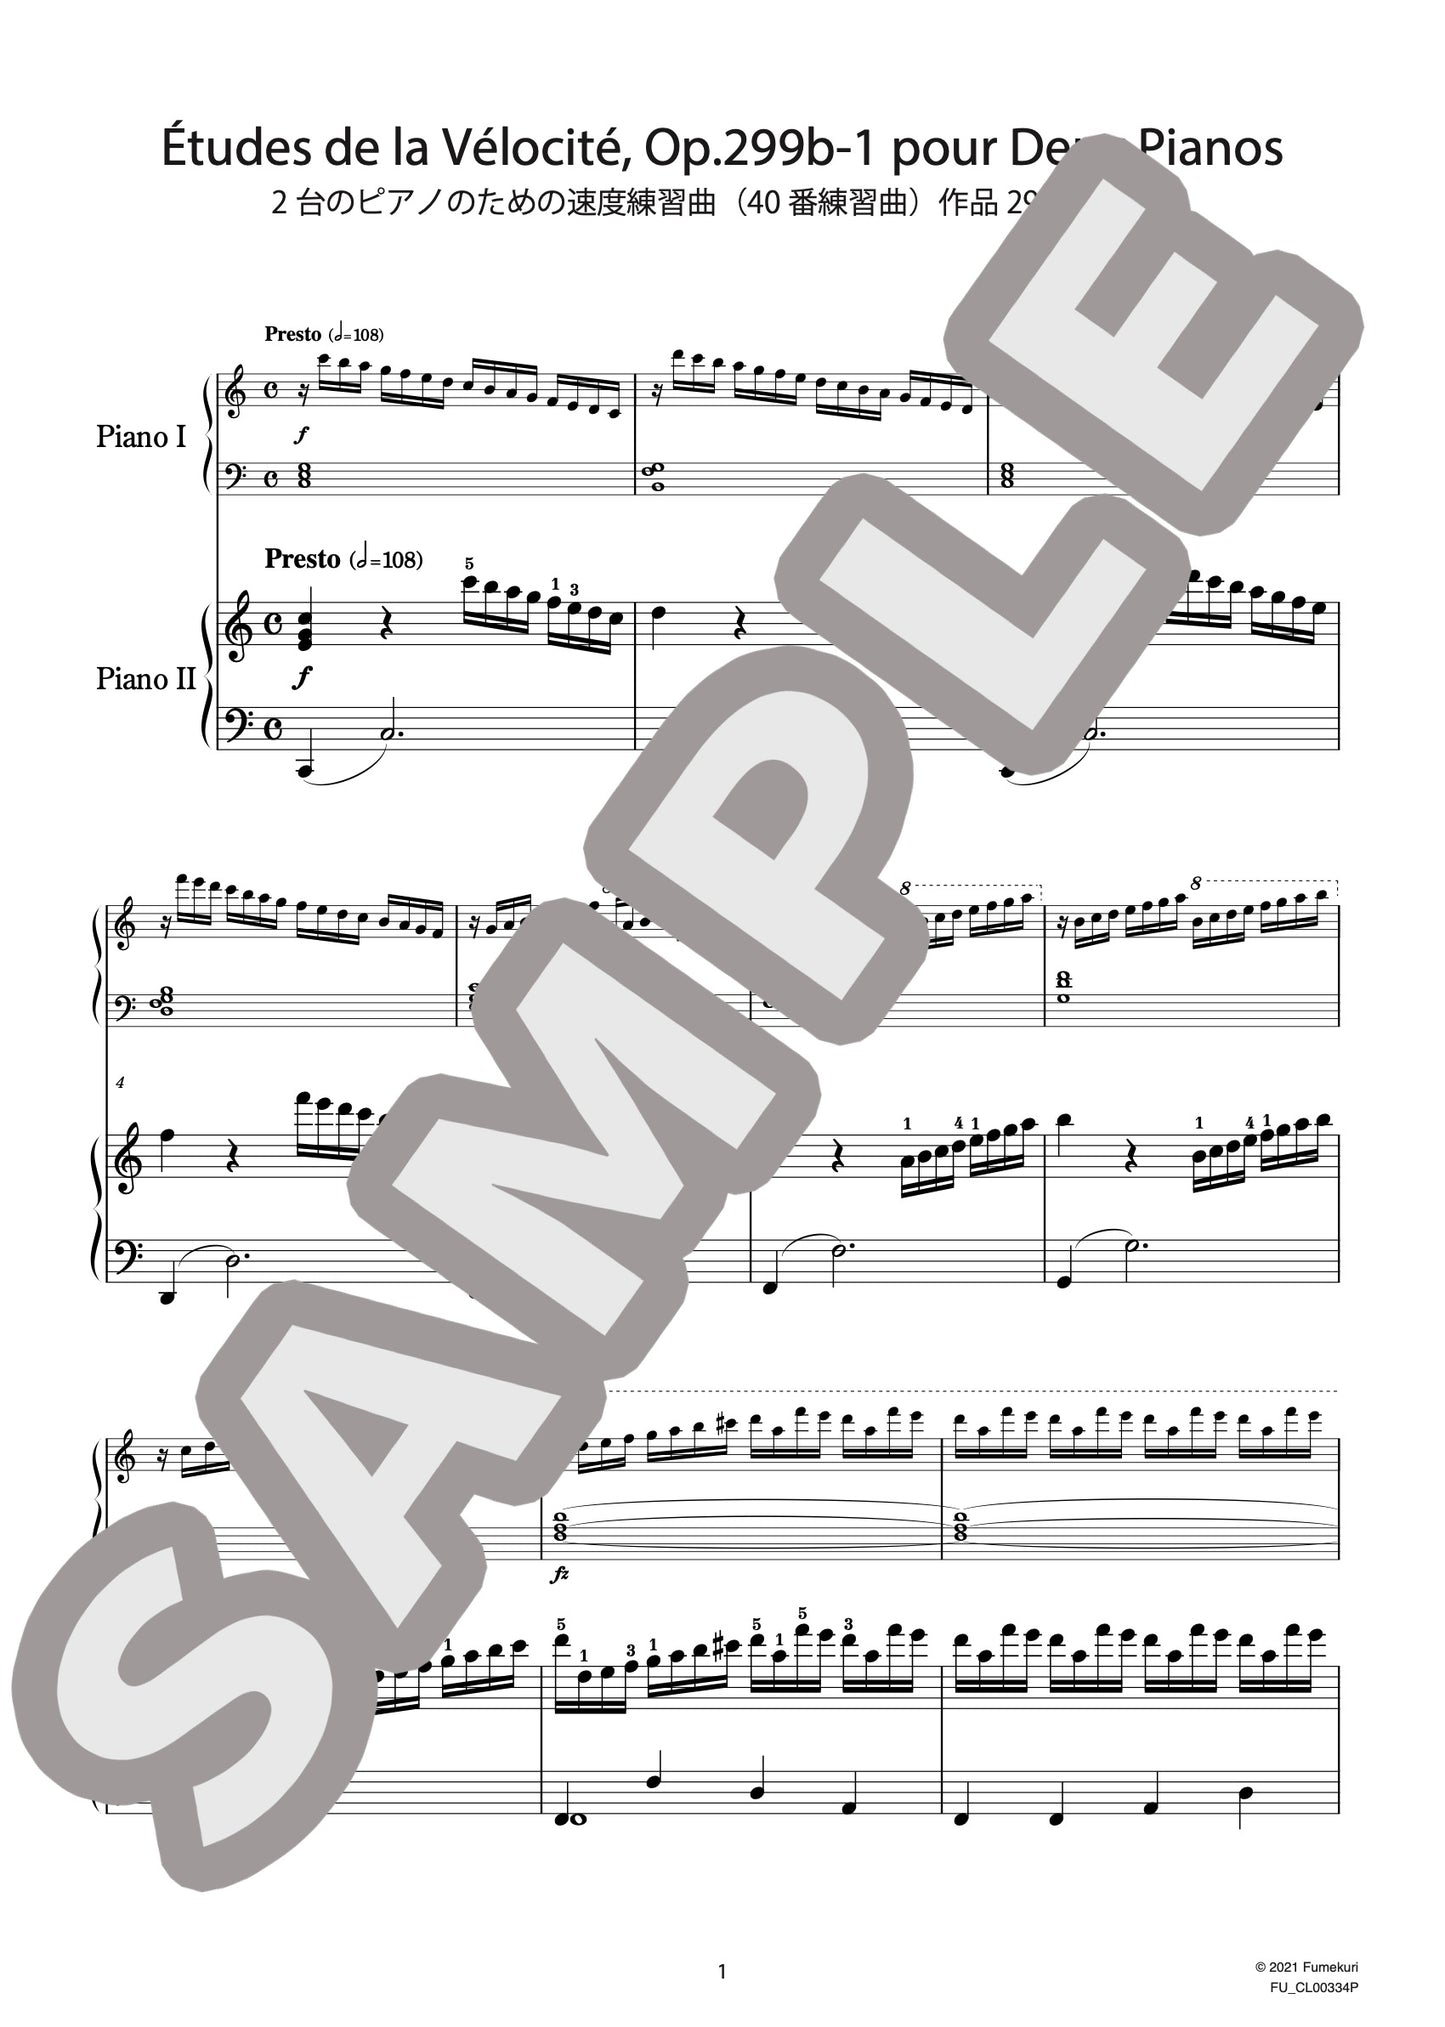 2台のピアノのための速度練習曲（40番練習曲）作品299b 第1番（CZERNY) / クラシック・オリジナル楽曲【中上級】